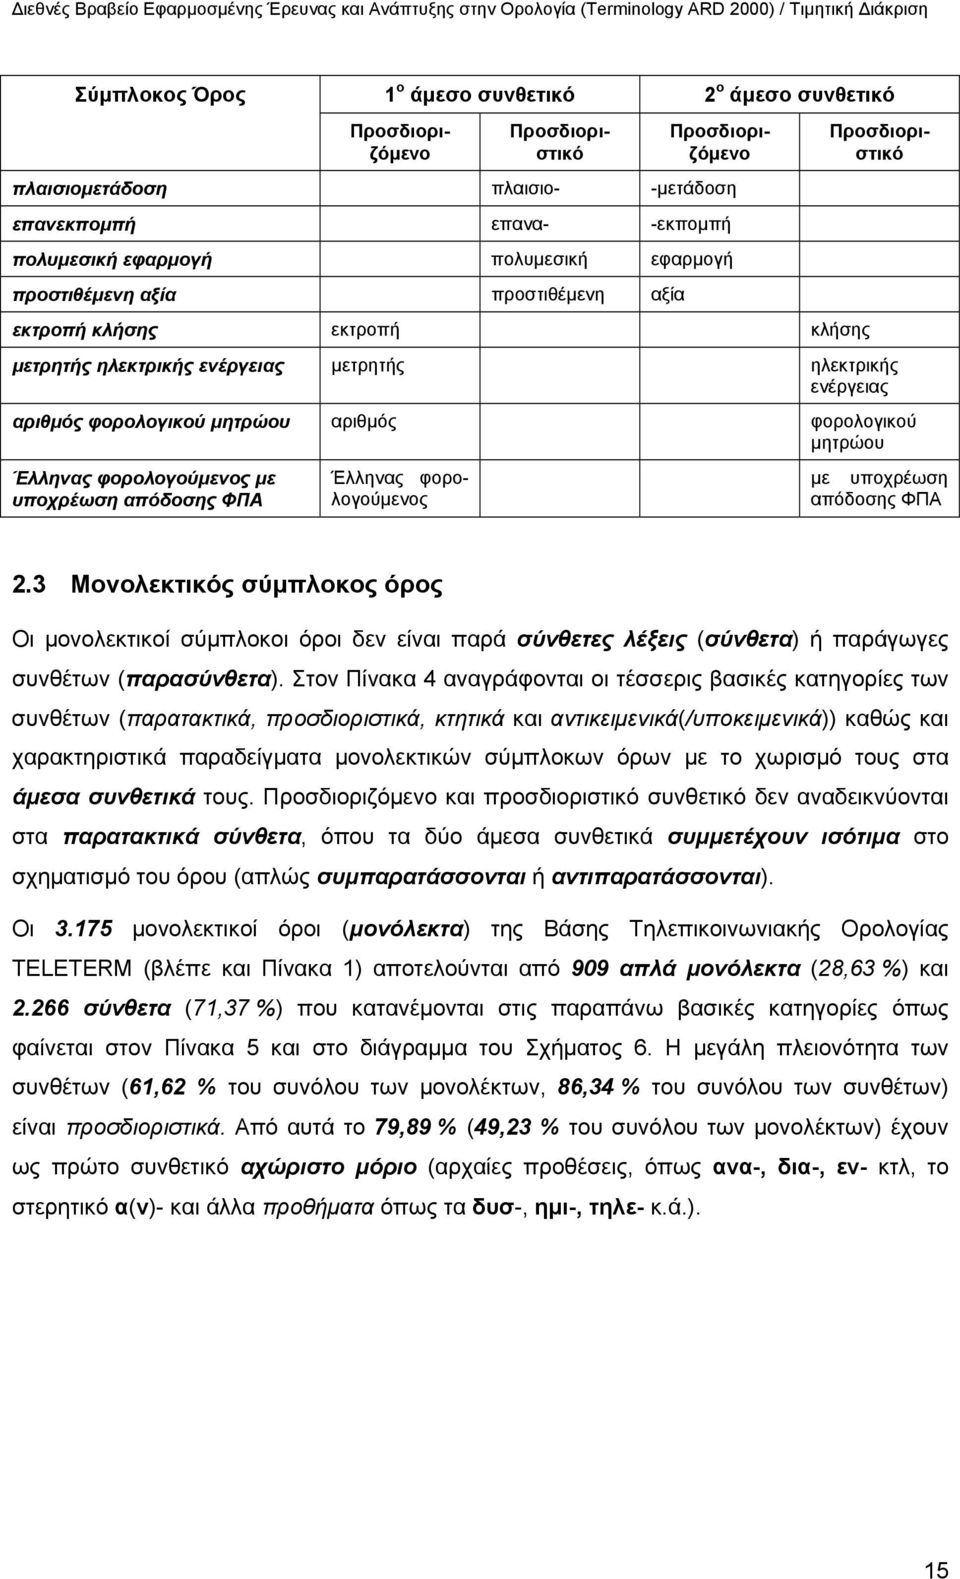 μητρώου Έλληνας φορολογούμενος με υποχρέωση απόδοσης ΦΠΑ Έλληνας φορολογούμενος με υποχρέωση απόδοσης ΦΠΑ 2.